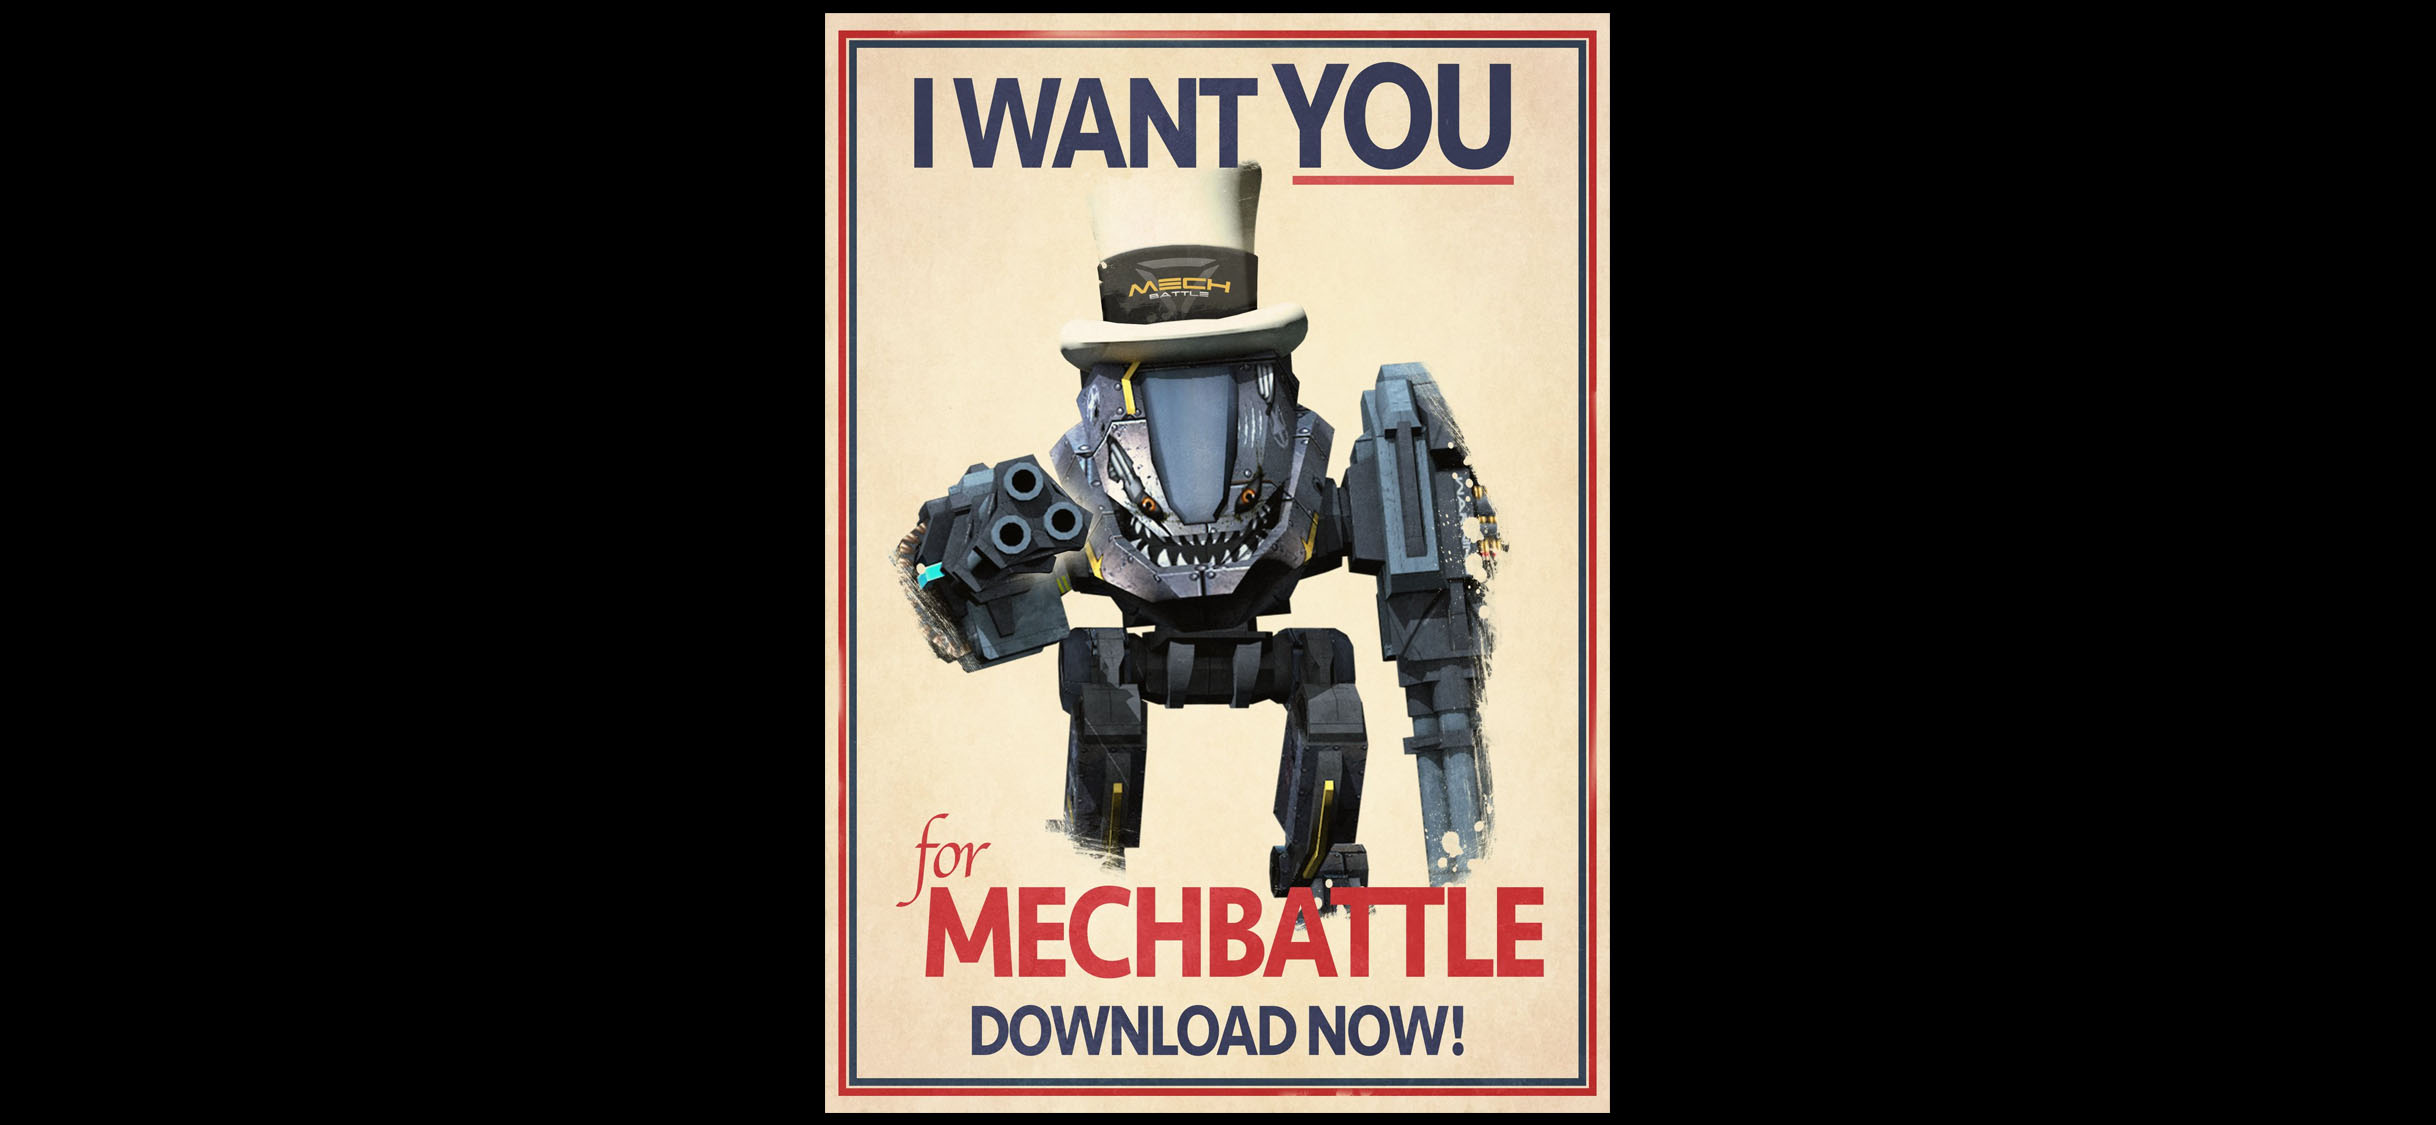 Mech Battle 4vs4 Cross Platform Online Multiplayer Shooter